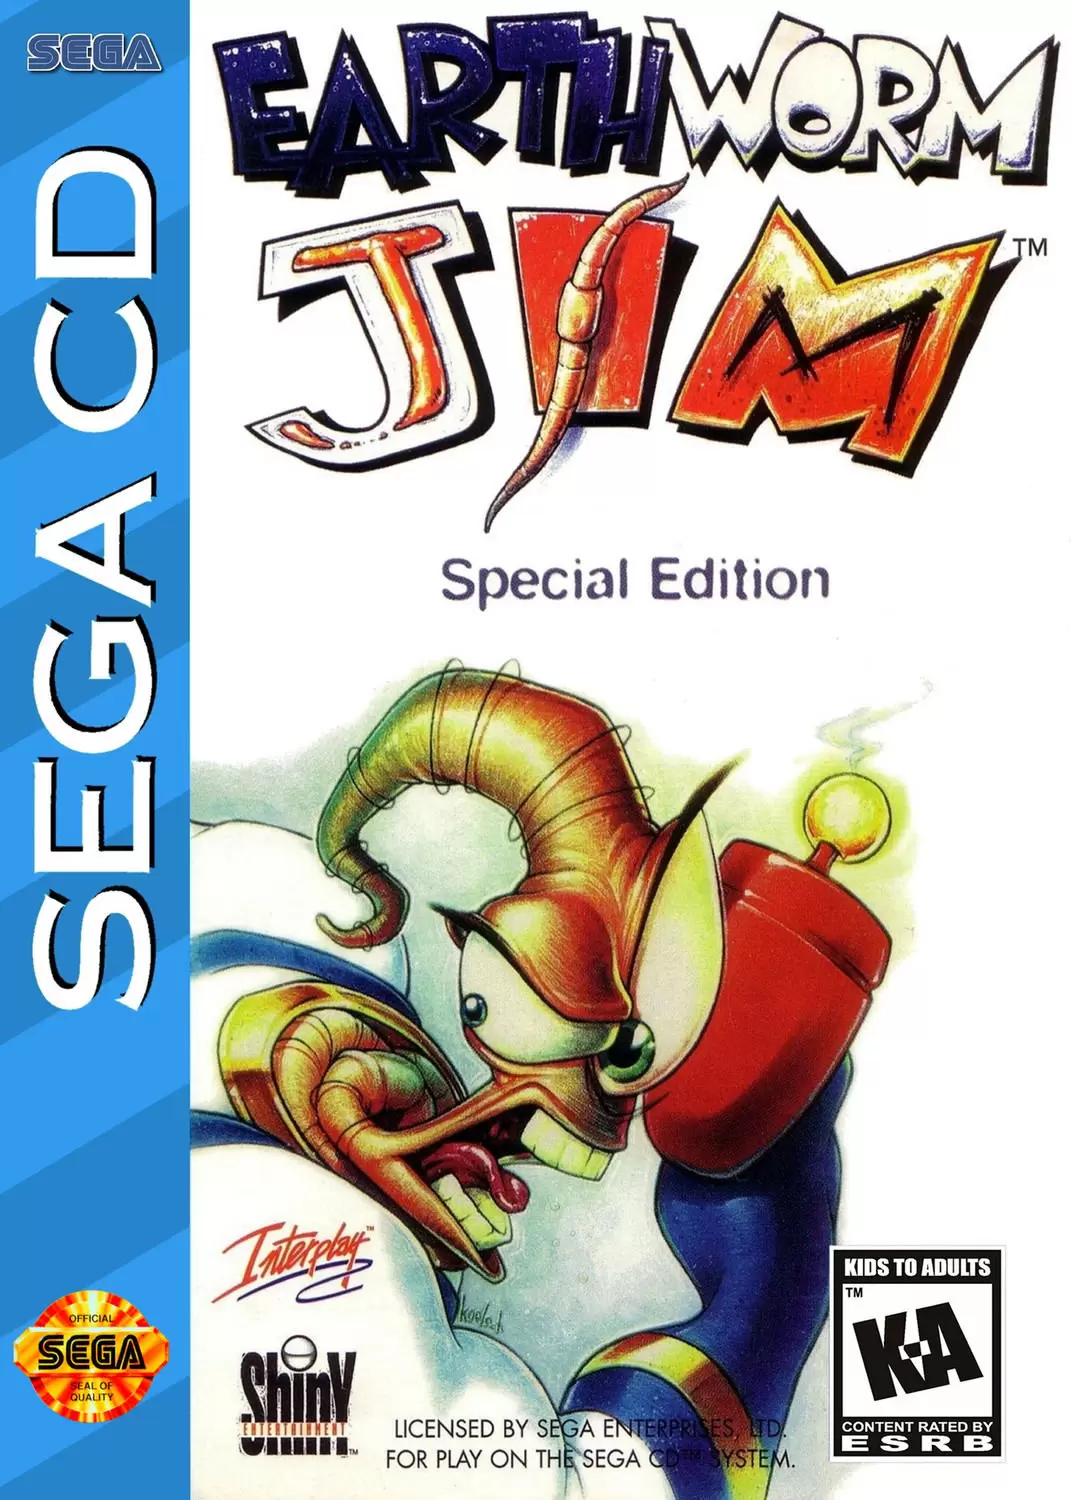 SEGA Mega CD Games - Earthworm Jim Special Edition